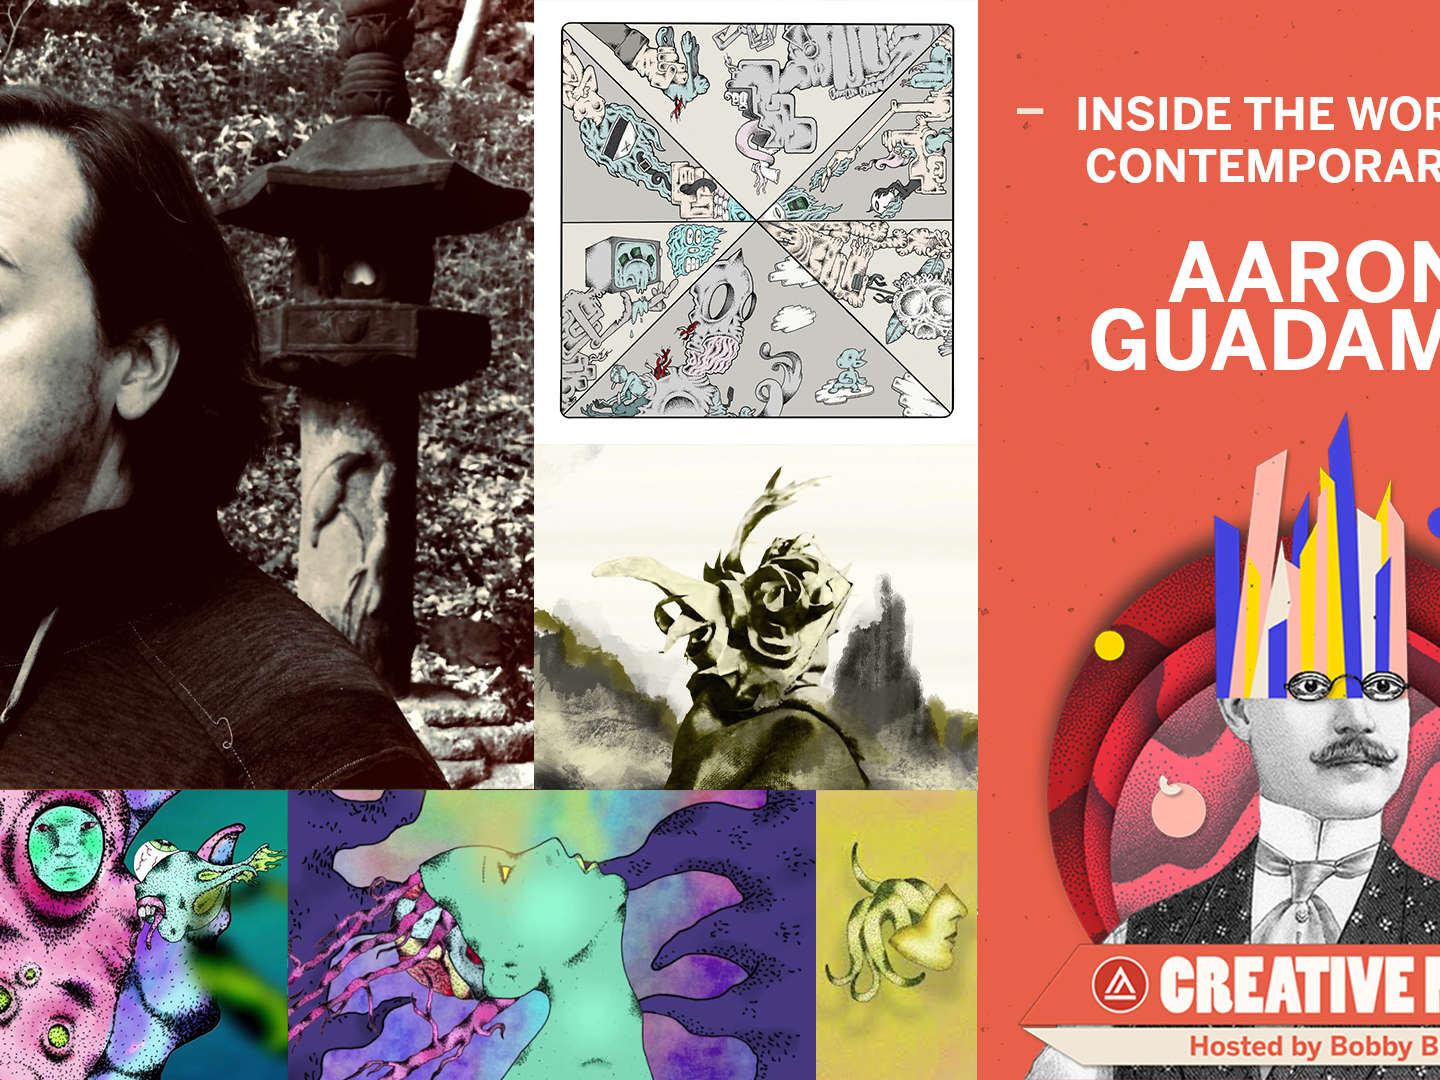 Creative Mind Podcast: Aaron Guadamuz